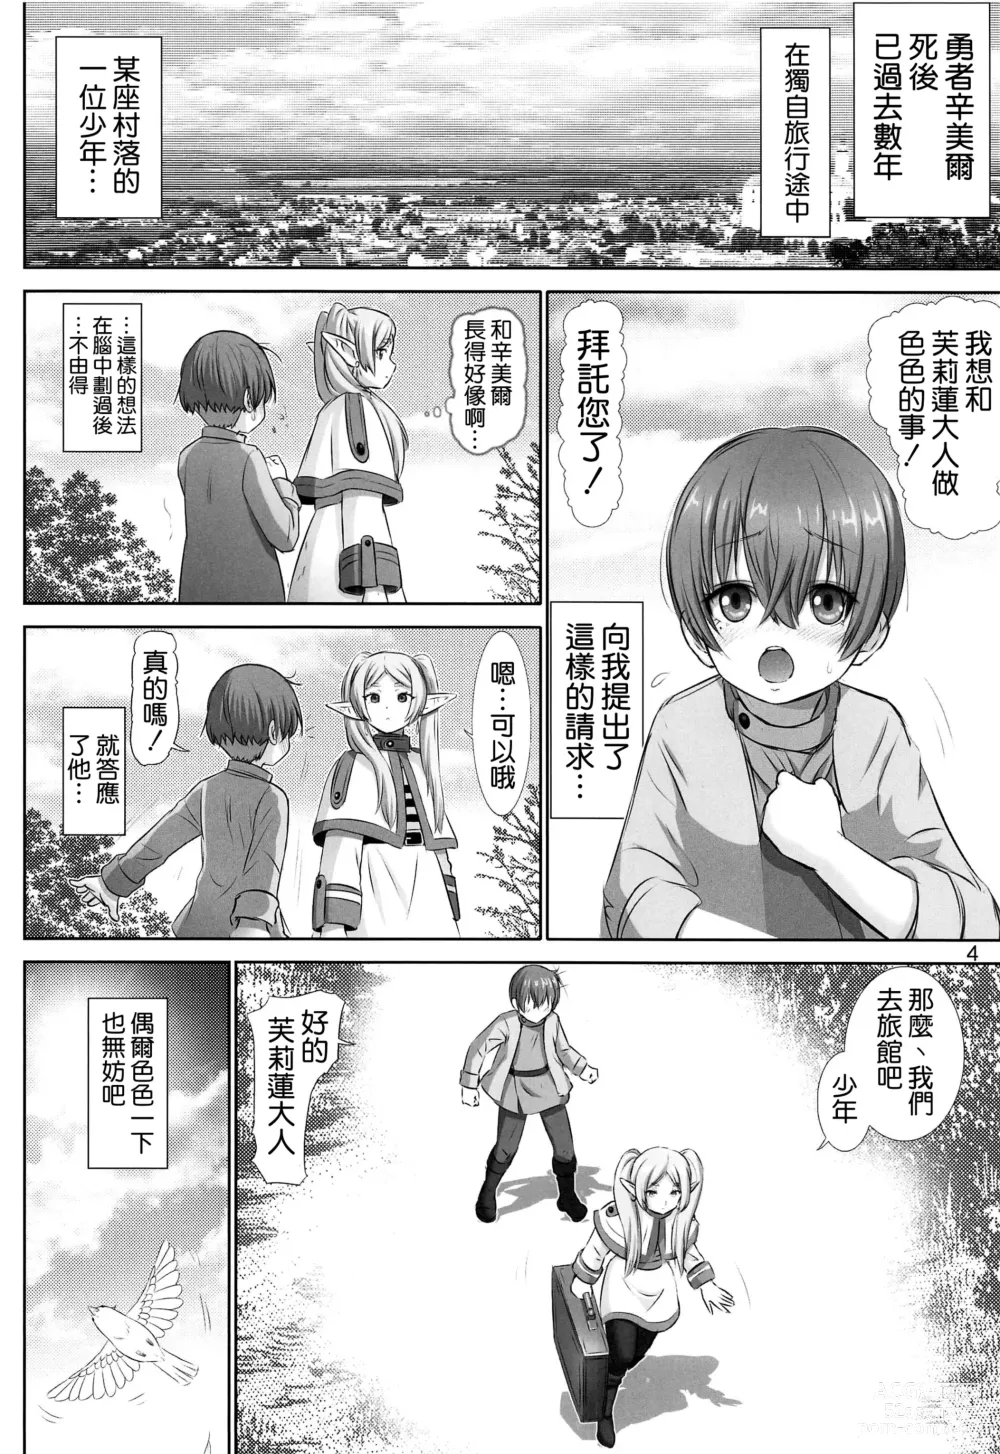 Page 4 of doujinshi Etsuraku no Frieren